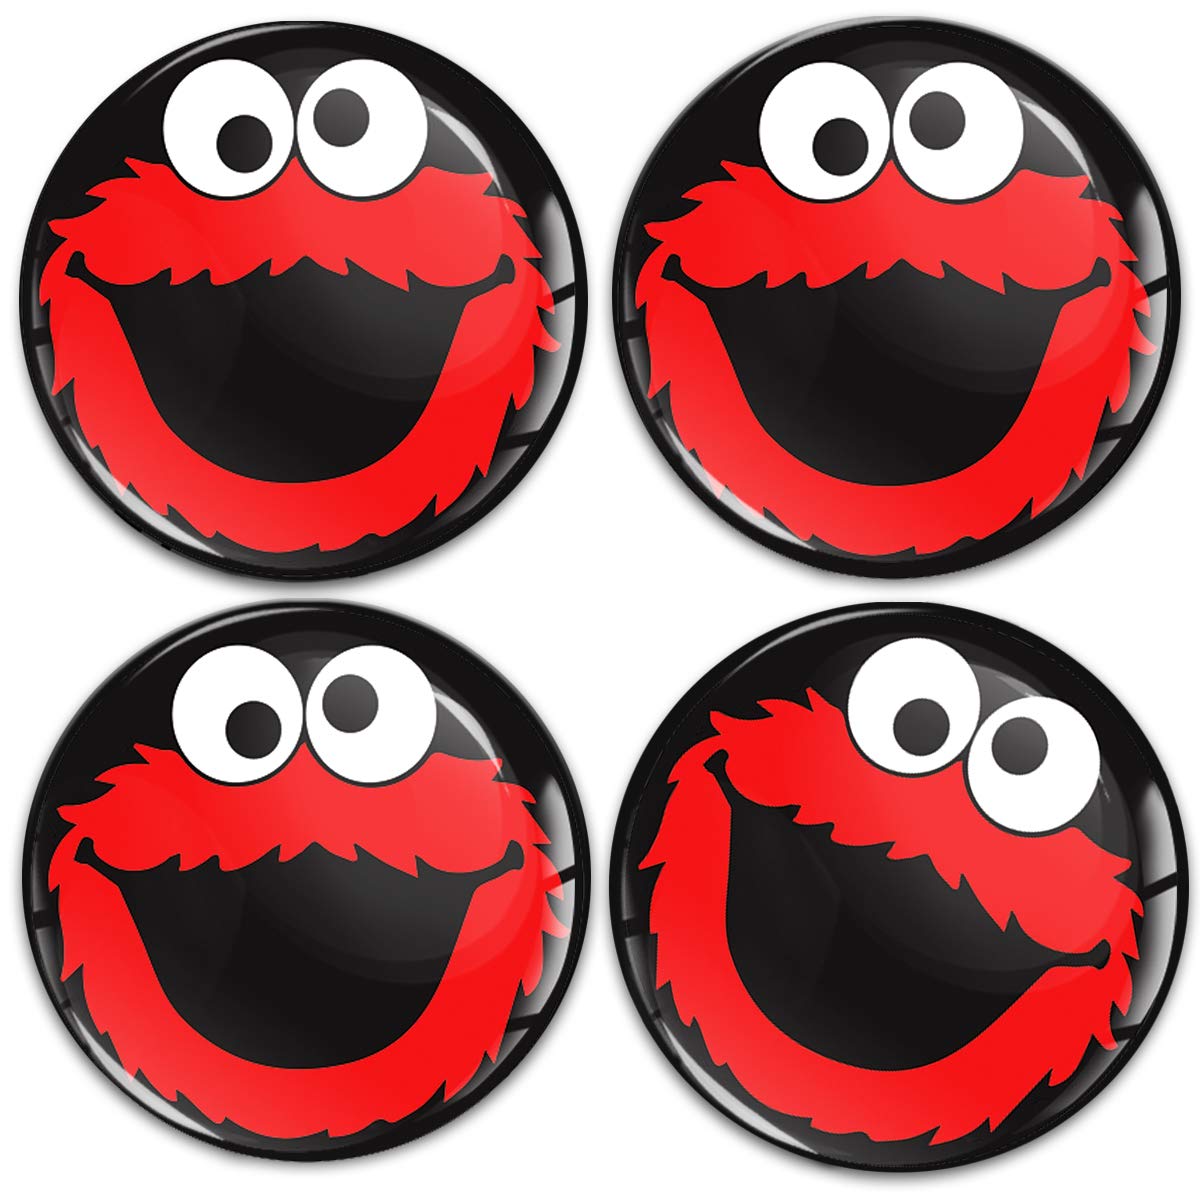 SkinoEu Aufkleber Autoaufkleber für Radkappen Nabenkappen Nabendeckel Radnabendeckel Rad-Aufkleber 55mm Schwarz Rot Cookie Monster A 5955 von Skino